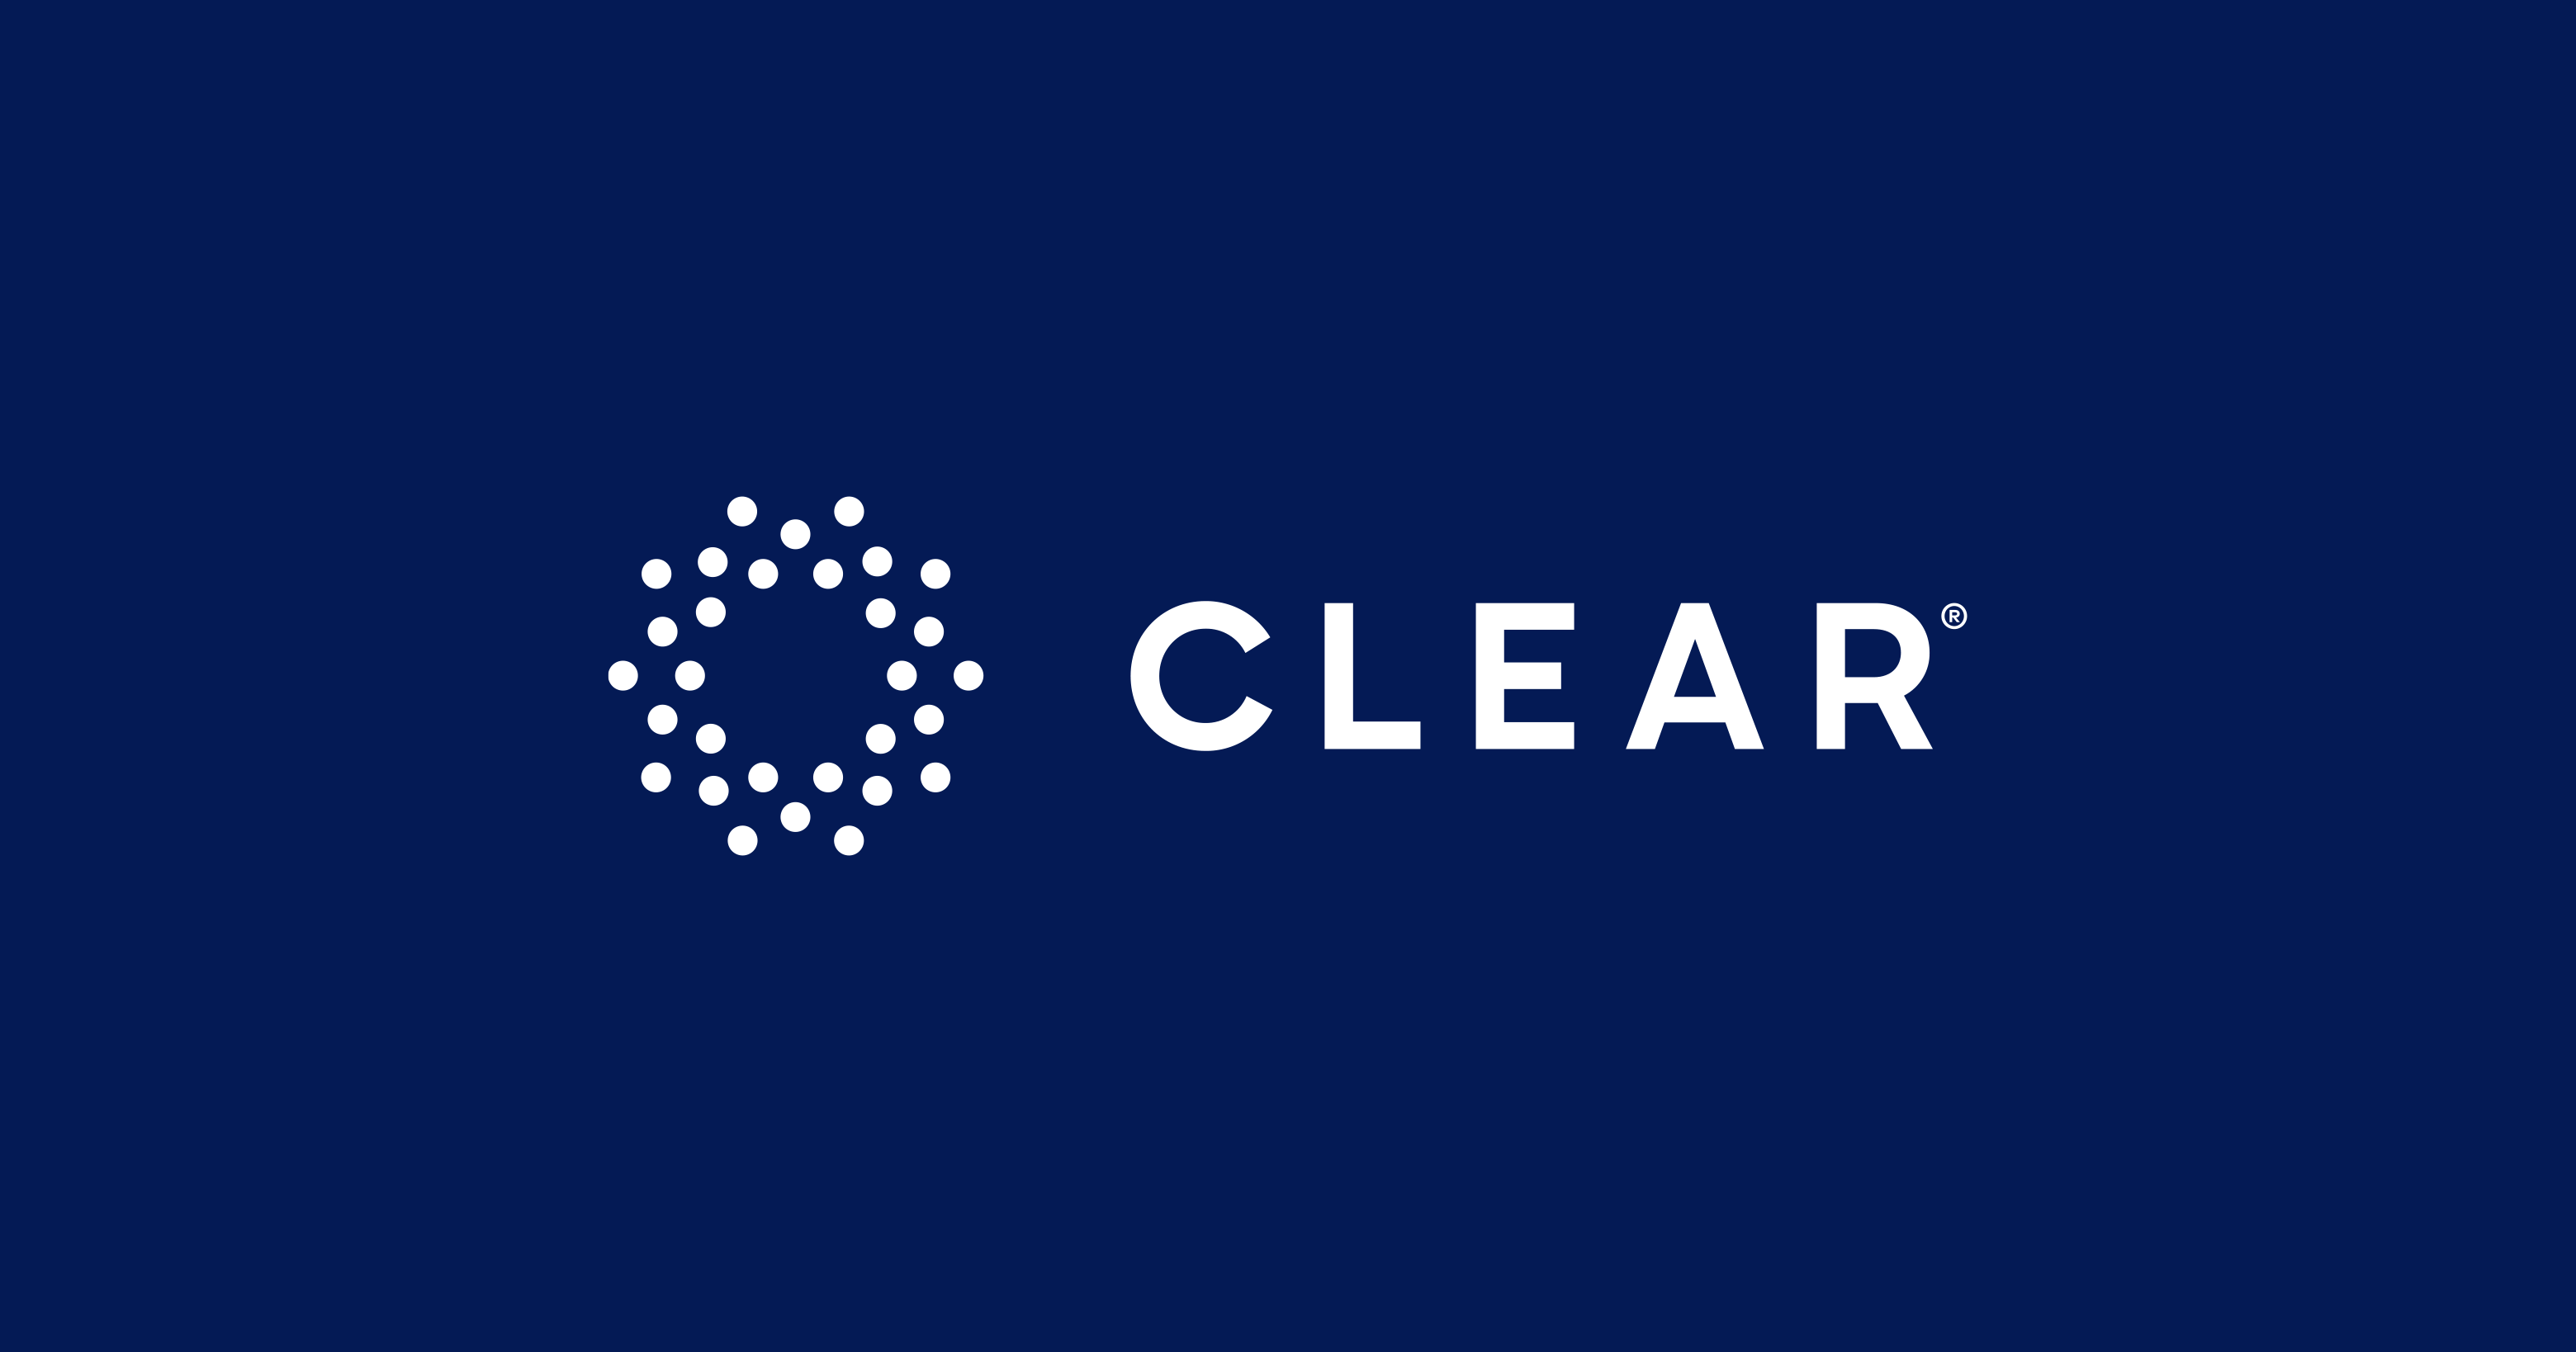 www.clearme.com